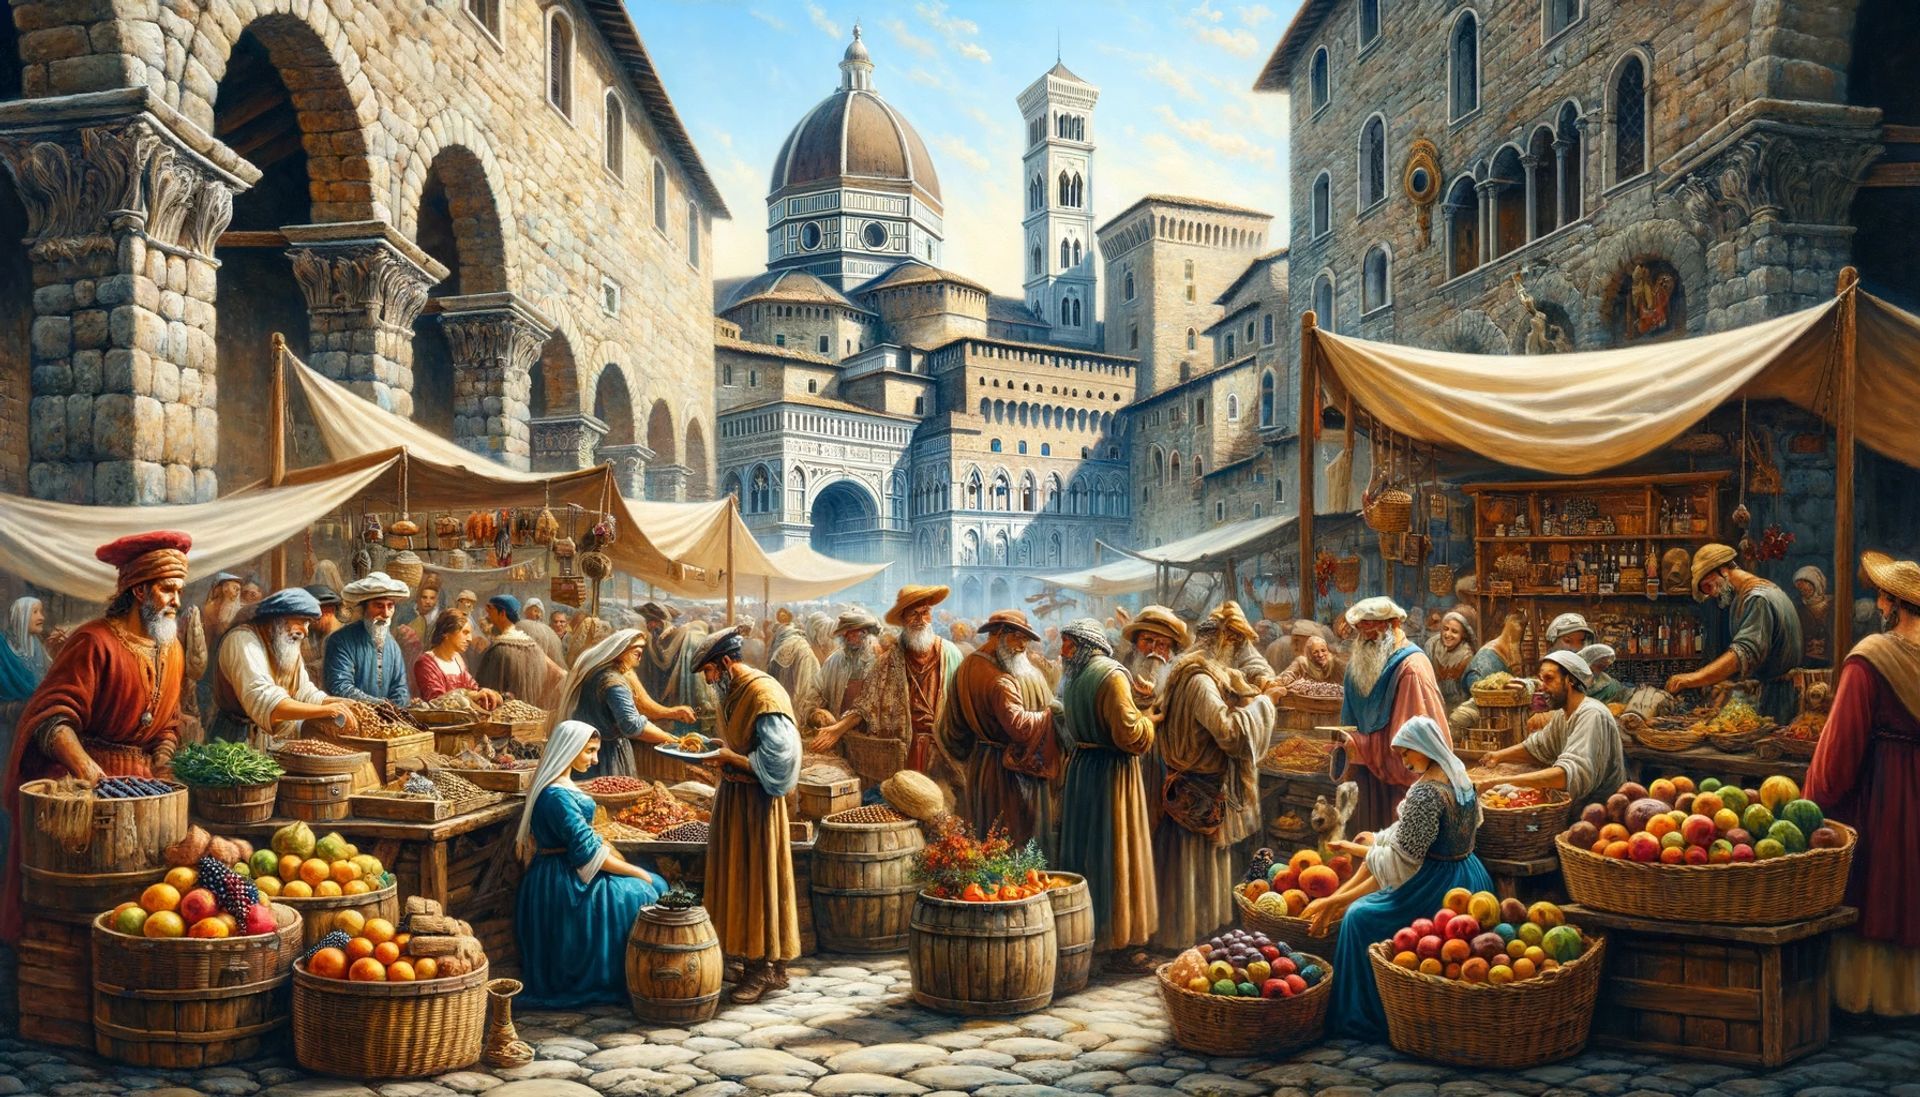 Un vibrante mercado medieval genovés, donde los comerciantes vendían especias de las Indias Orientales y varios otros productos.